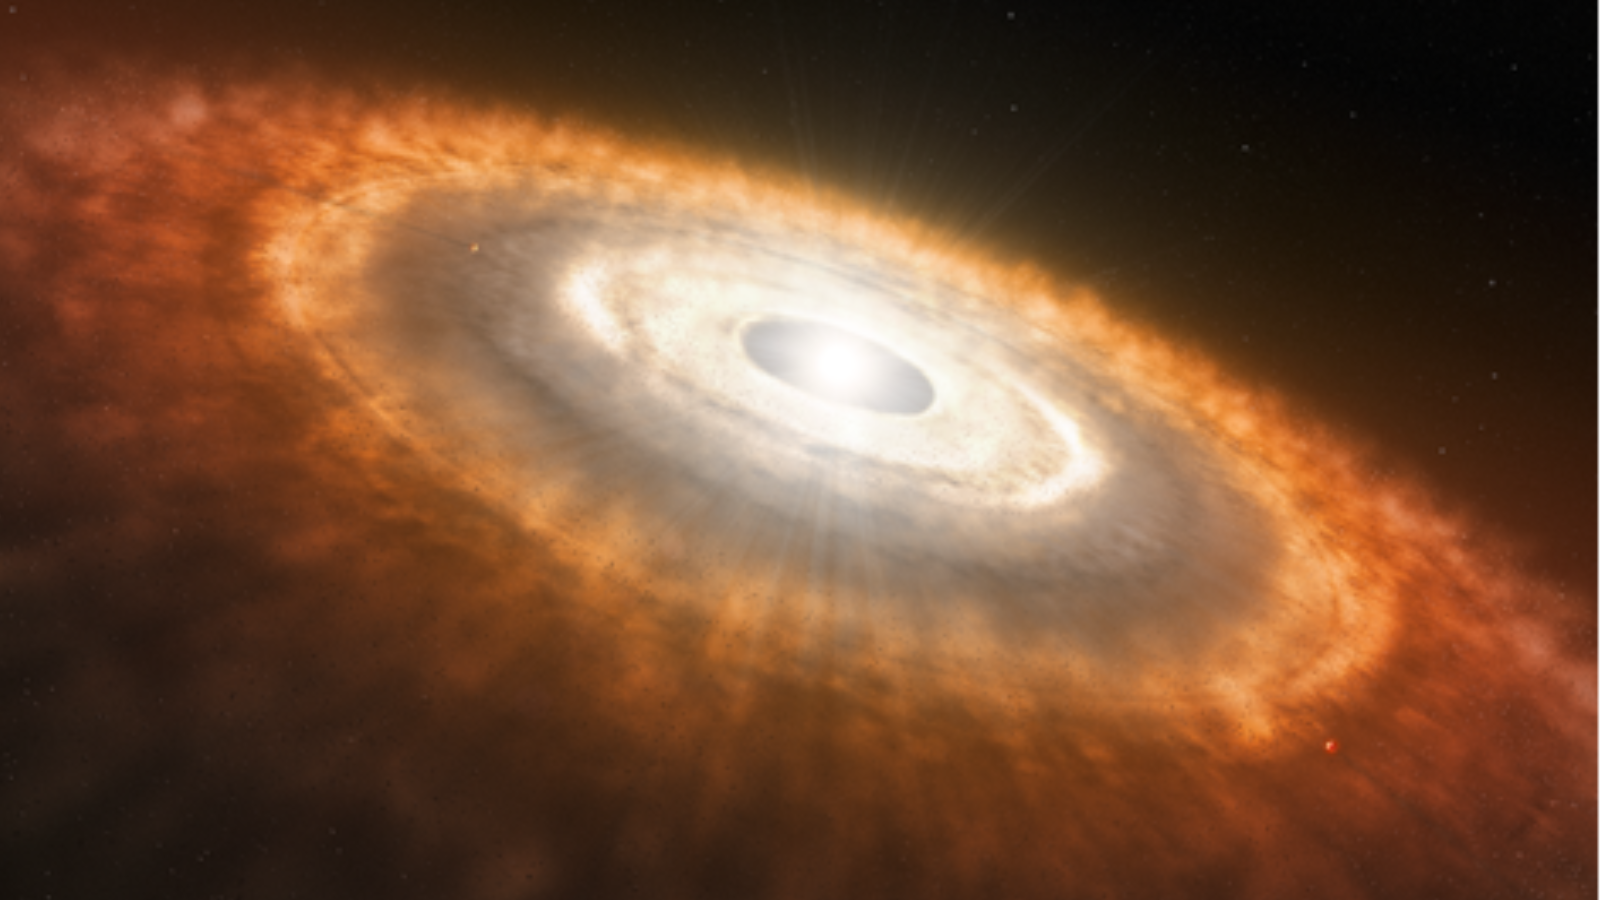 Ilustração de uma estrela branca brilhante cercada por um enorme halo de gás avermelhado, poeira e outros objetos.